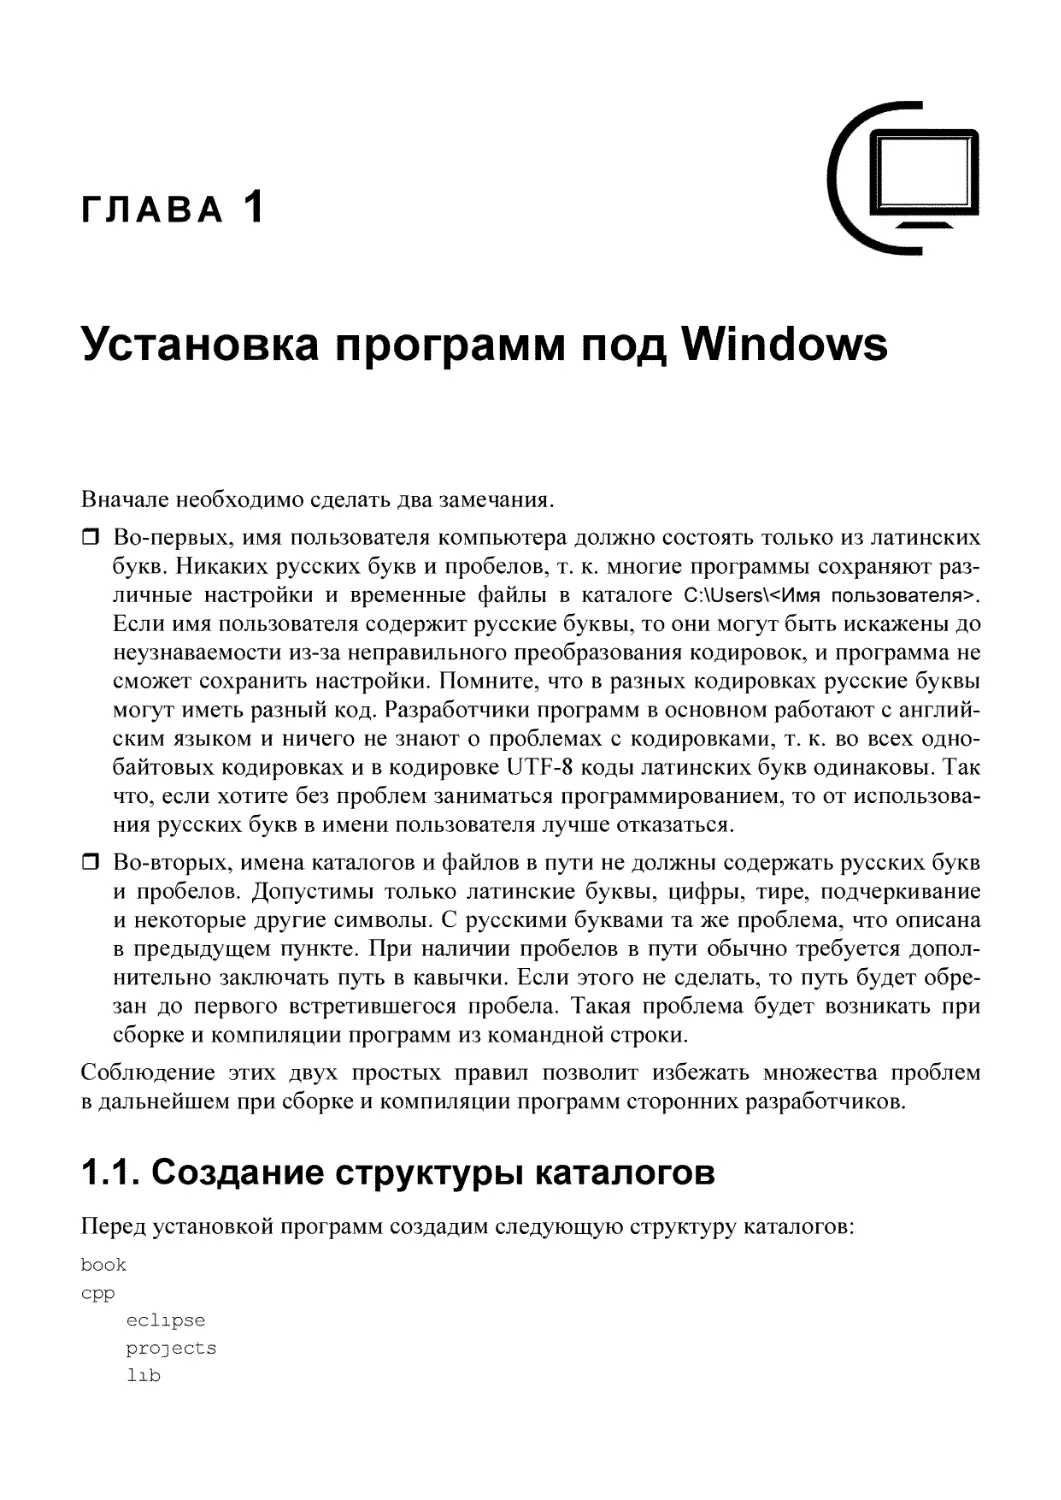 1. Установка программ под Windows